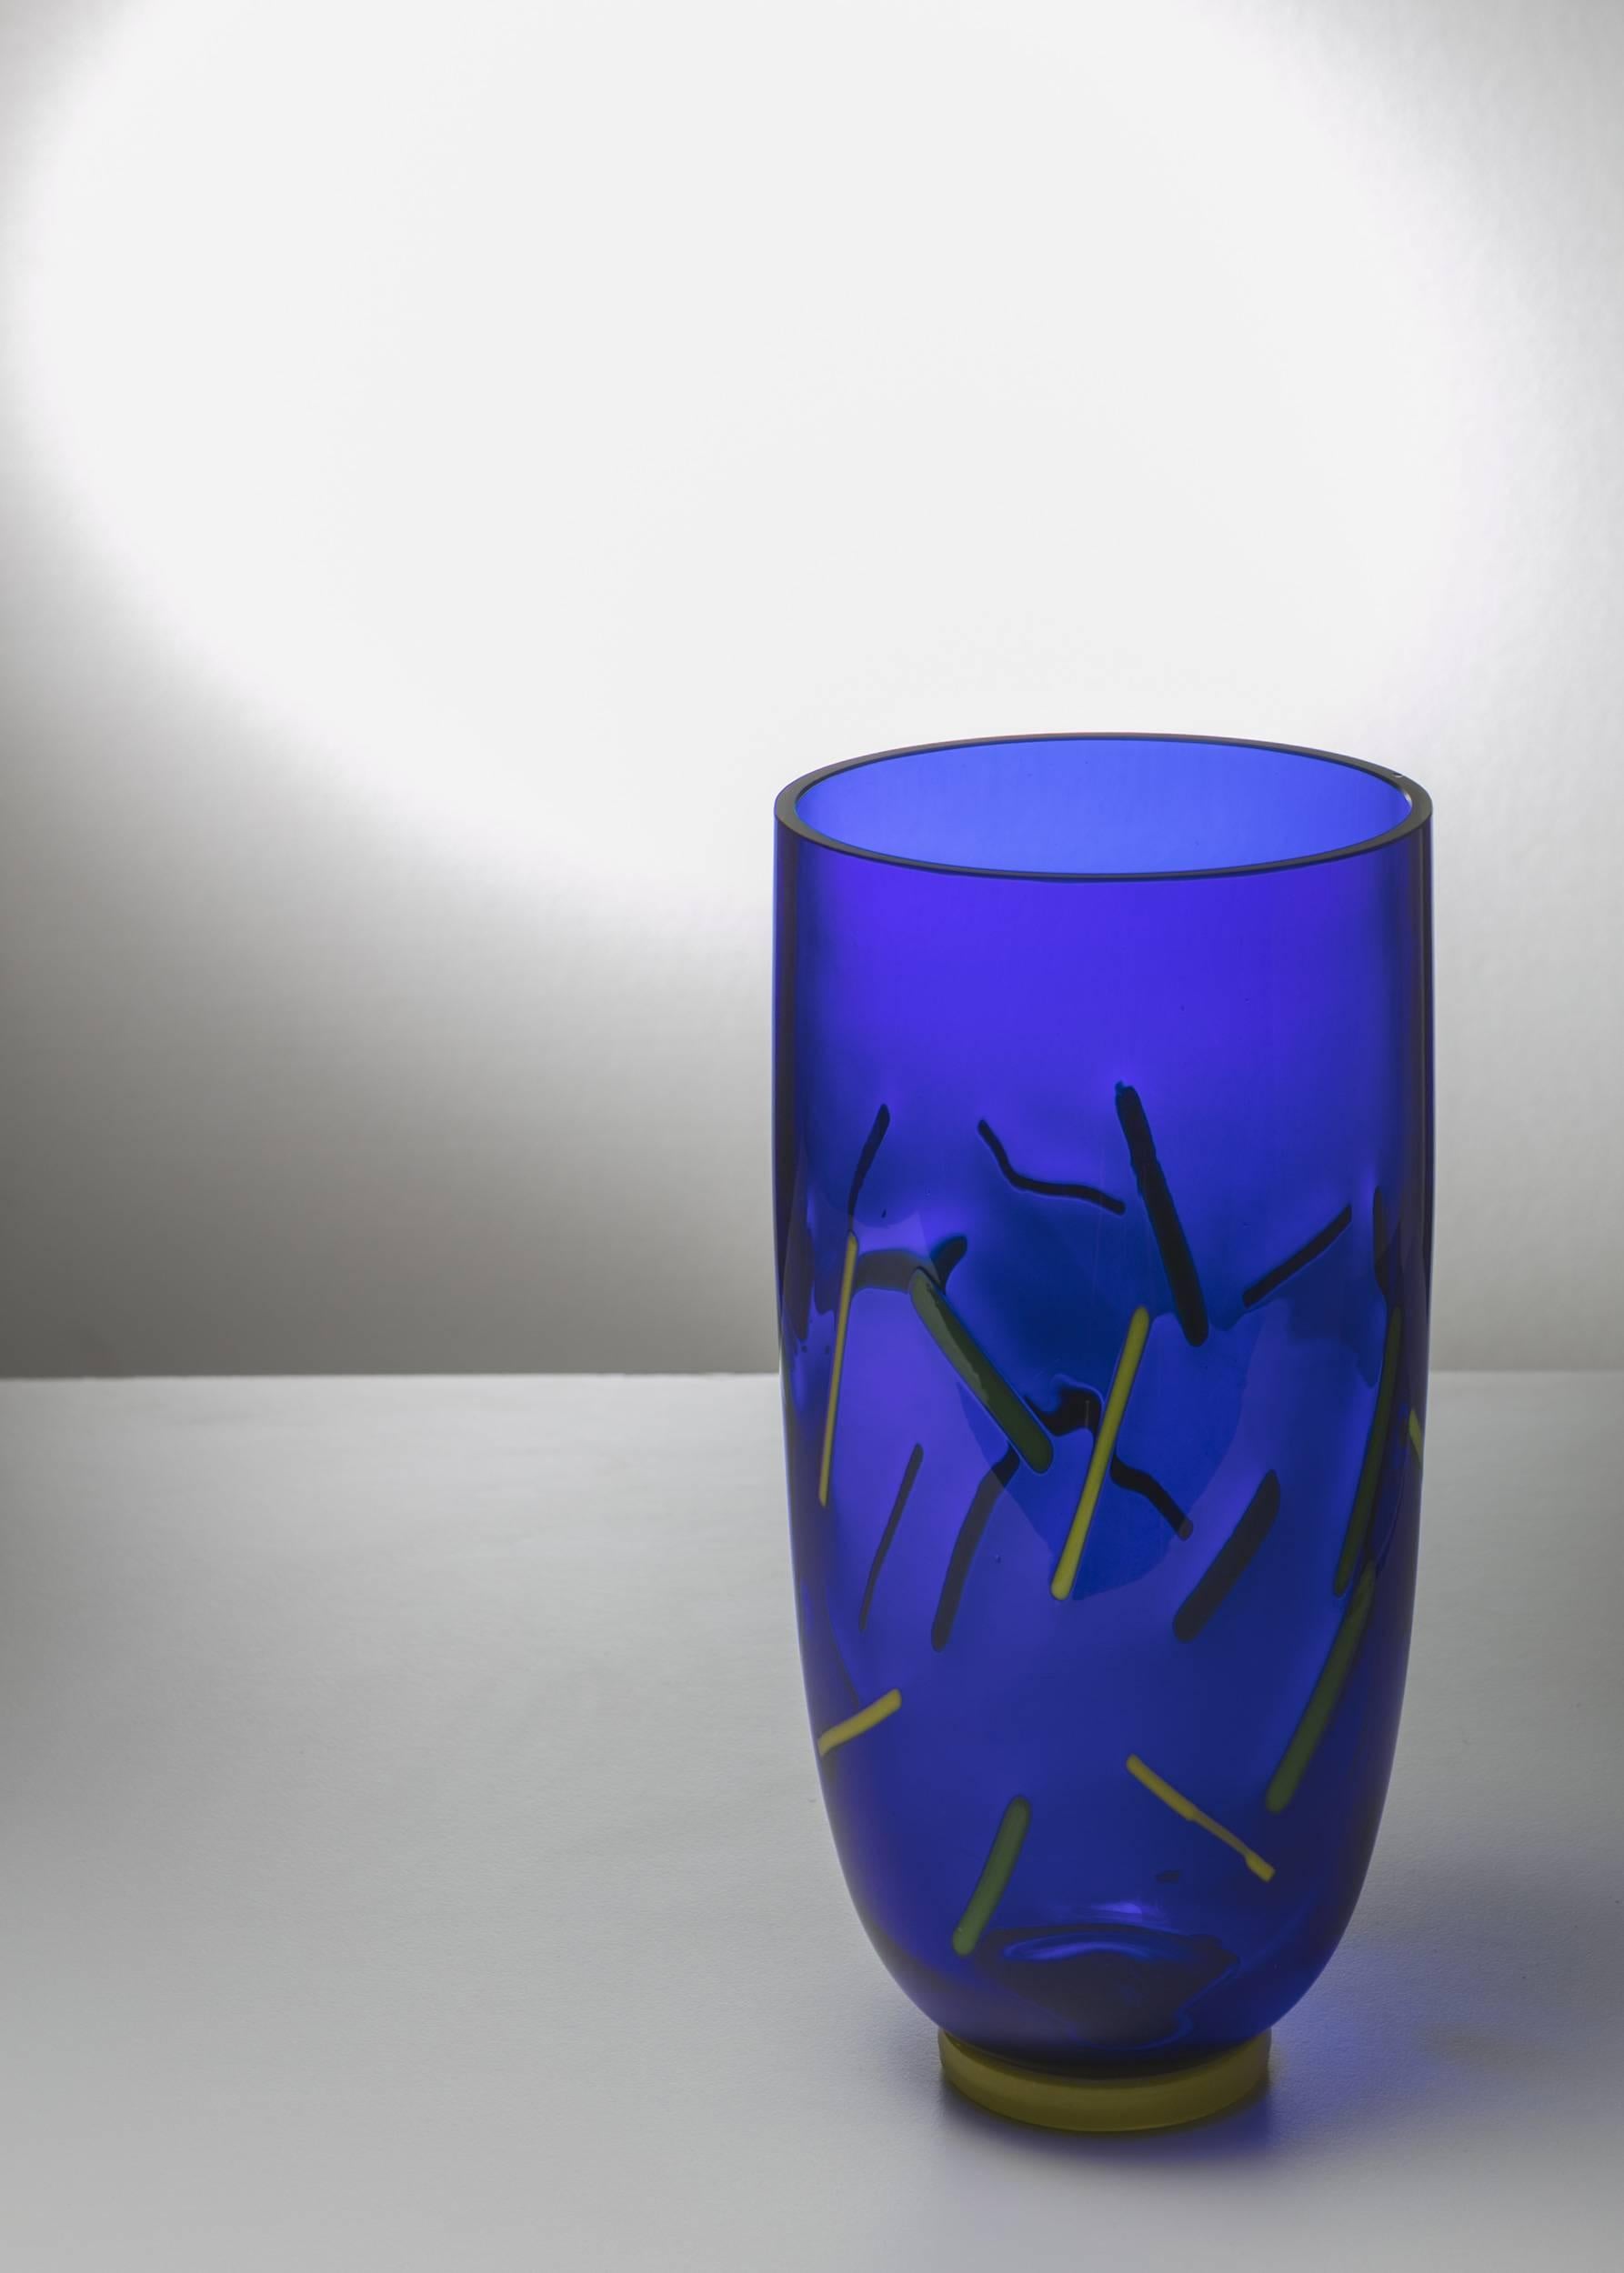 Bemerkenswerte Vase aus Murano-Glas von Barovier und Toso.
Blauer Körper mit gelben und grünen Einschlüssen.